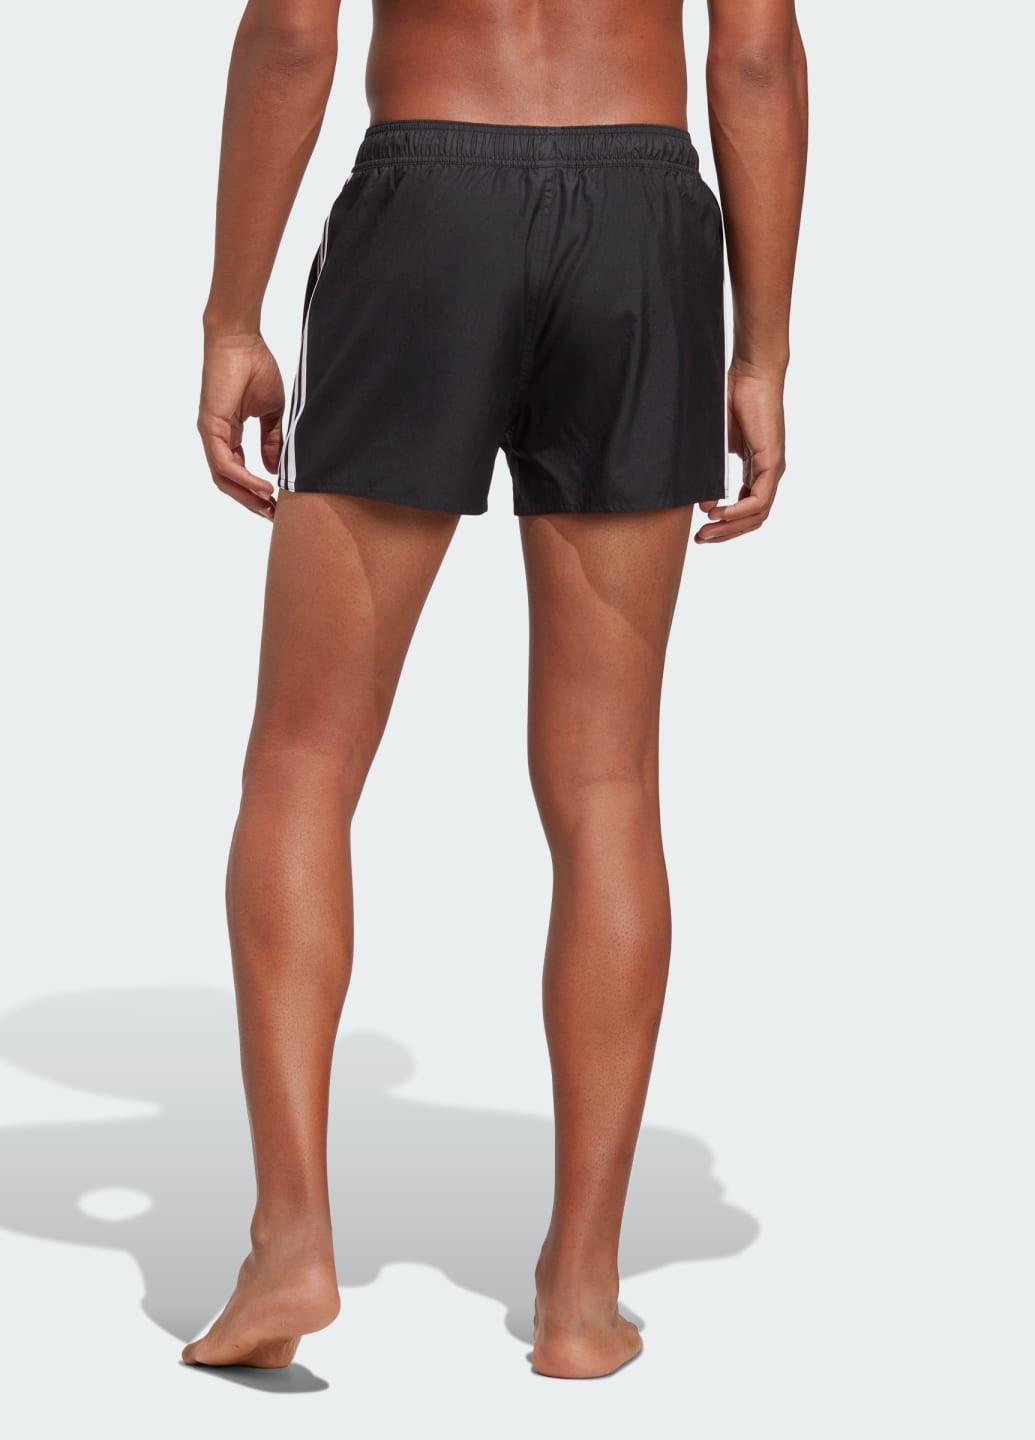 Мужские черные спортивные короткие плавательные шорты 3-stripes clx adidas